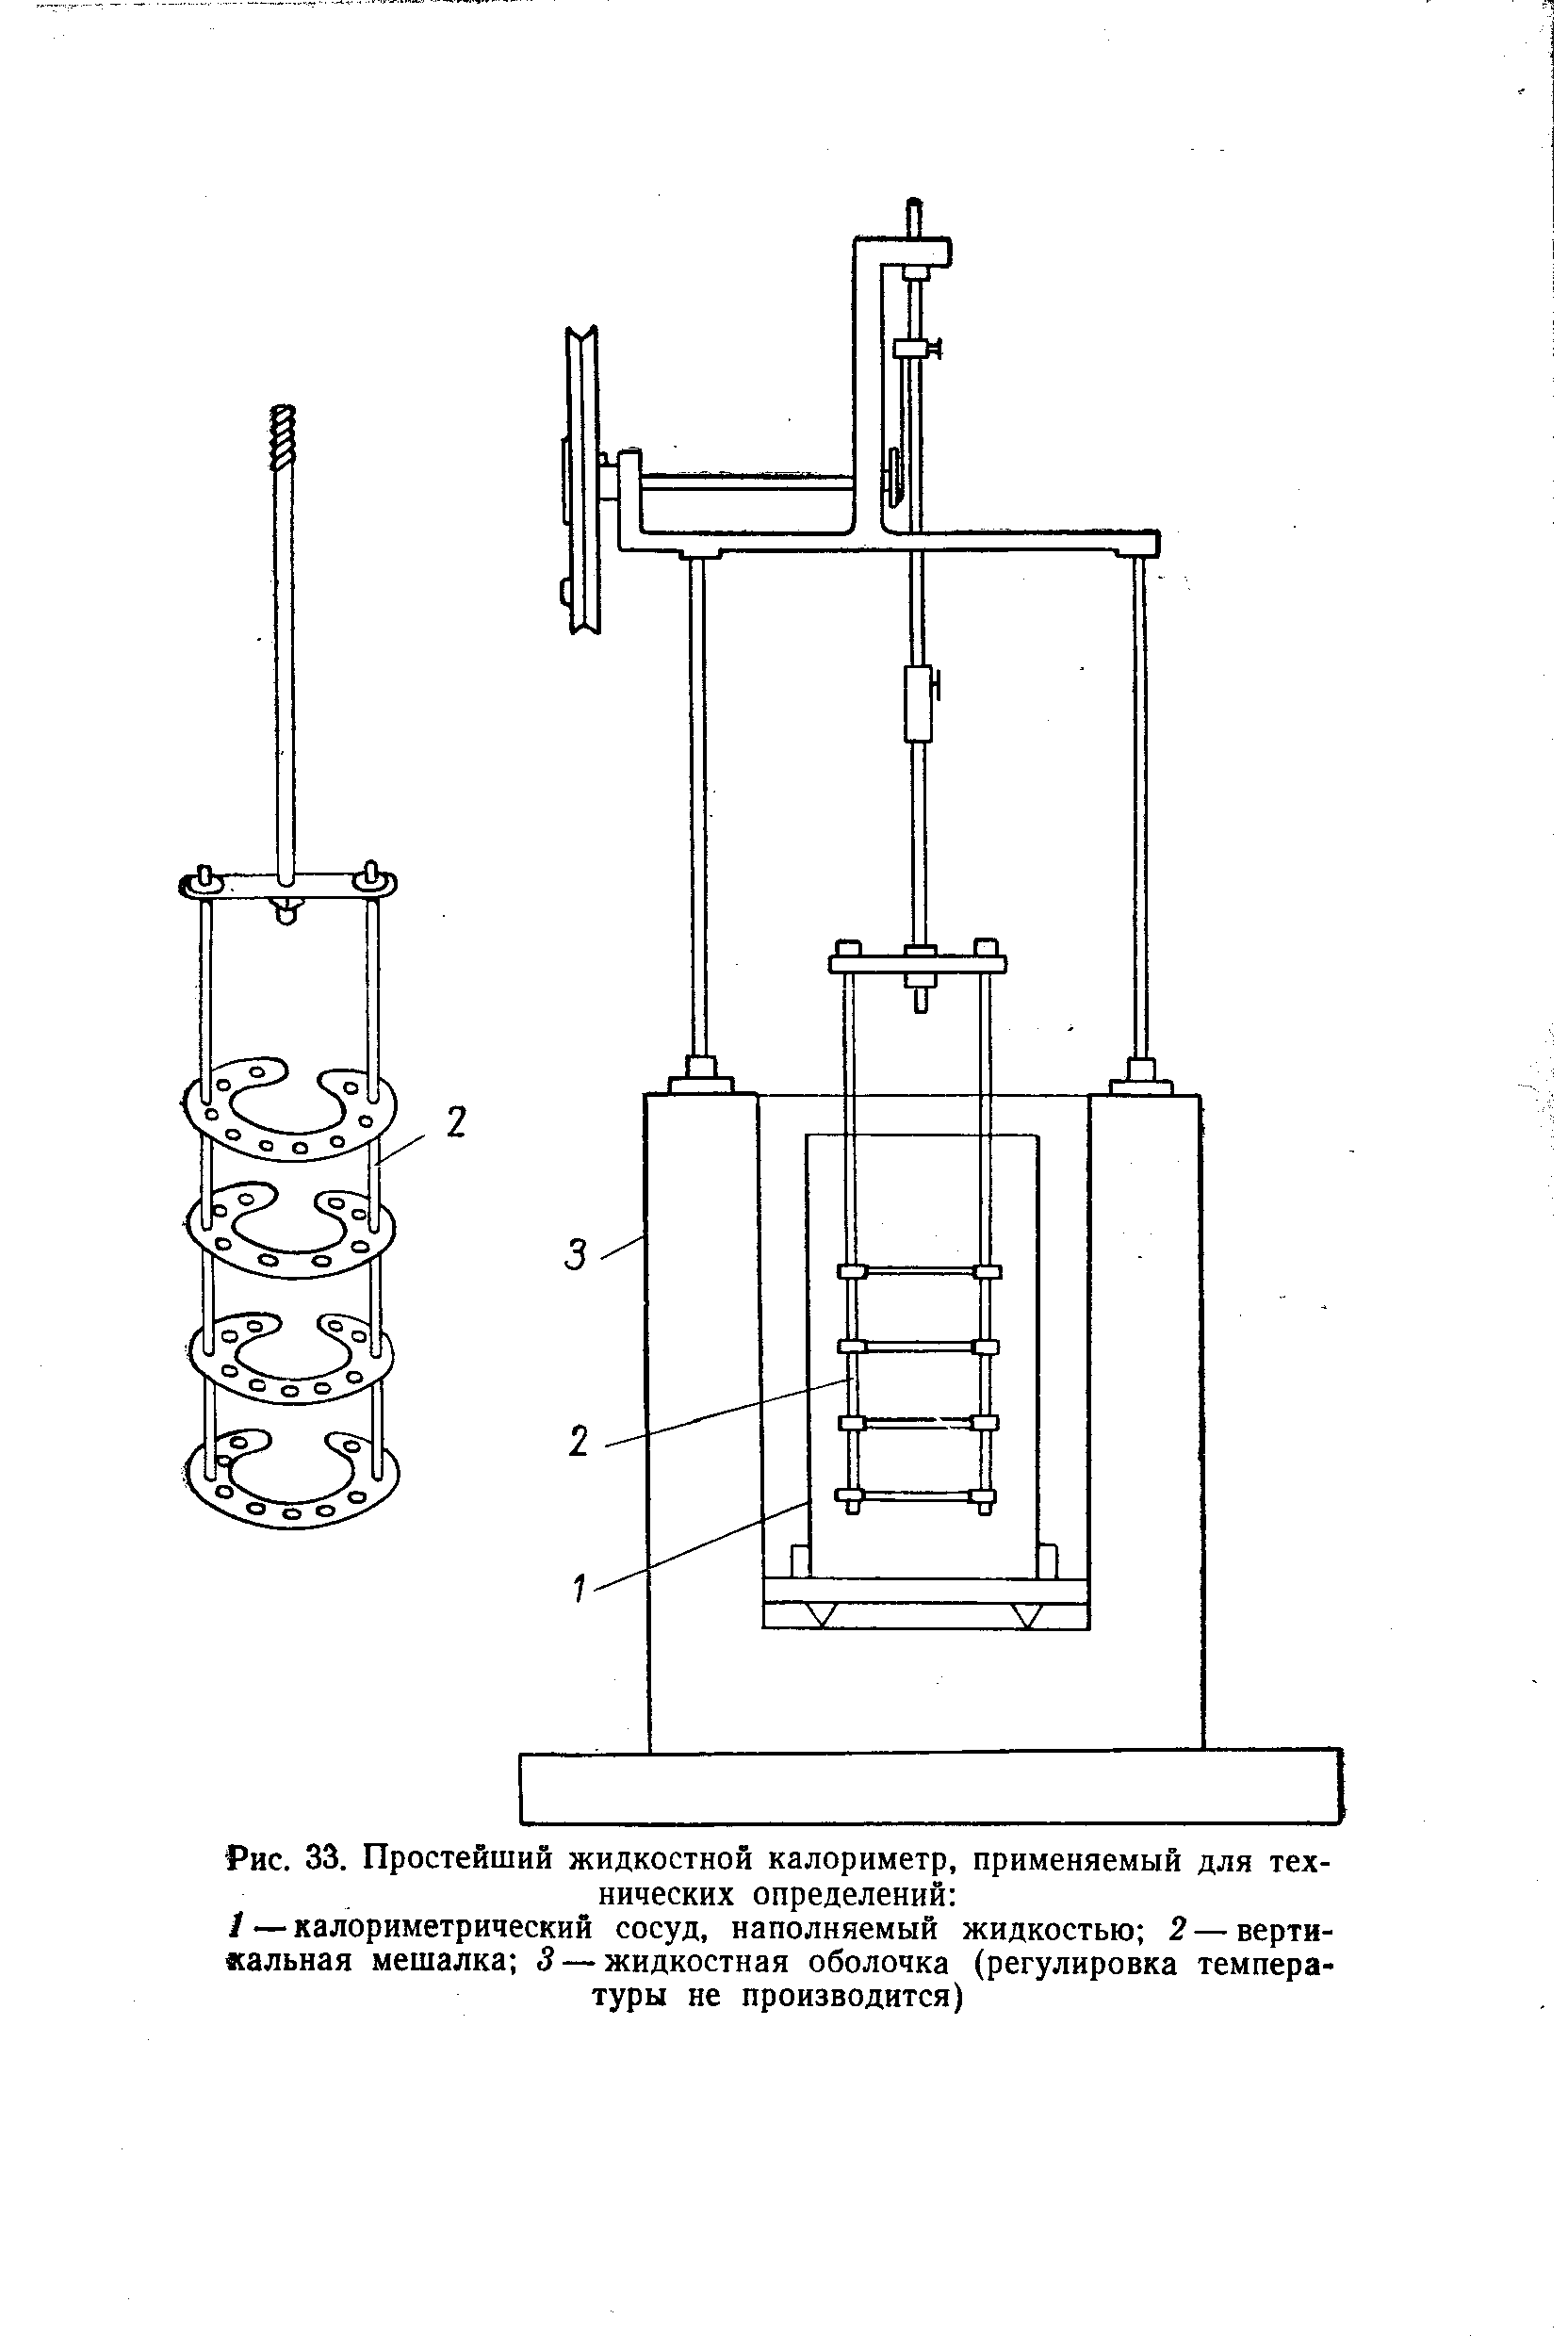 Рис. 33. Простейший жидкостной калориметр, применяемый для технических определений 
